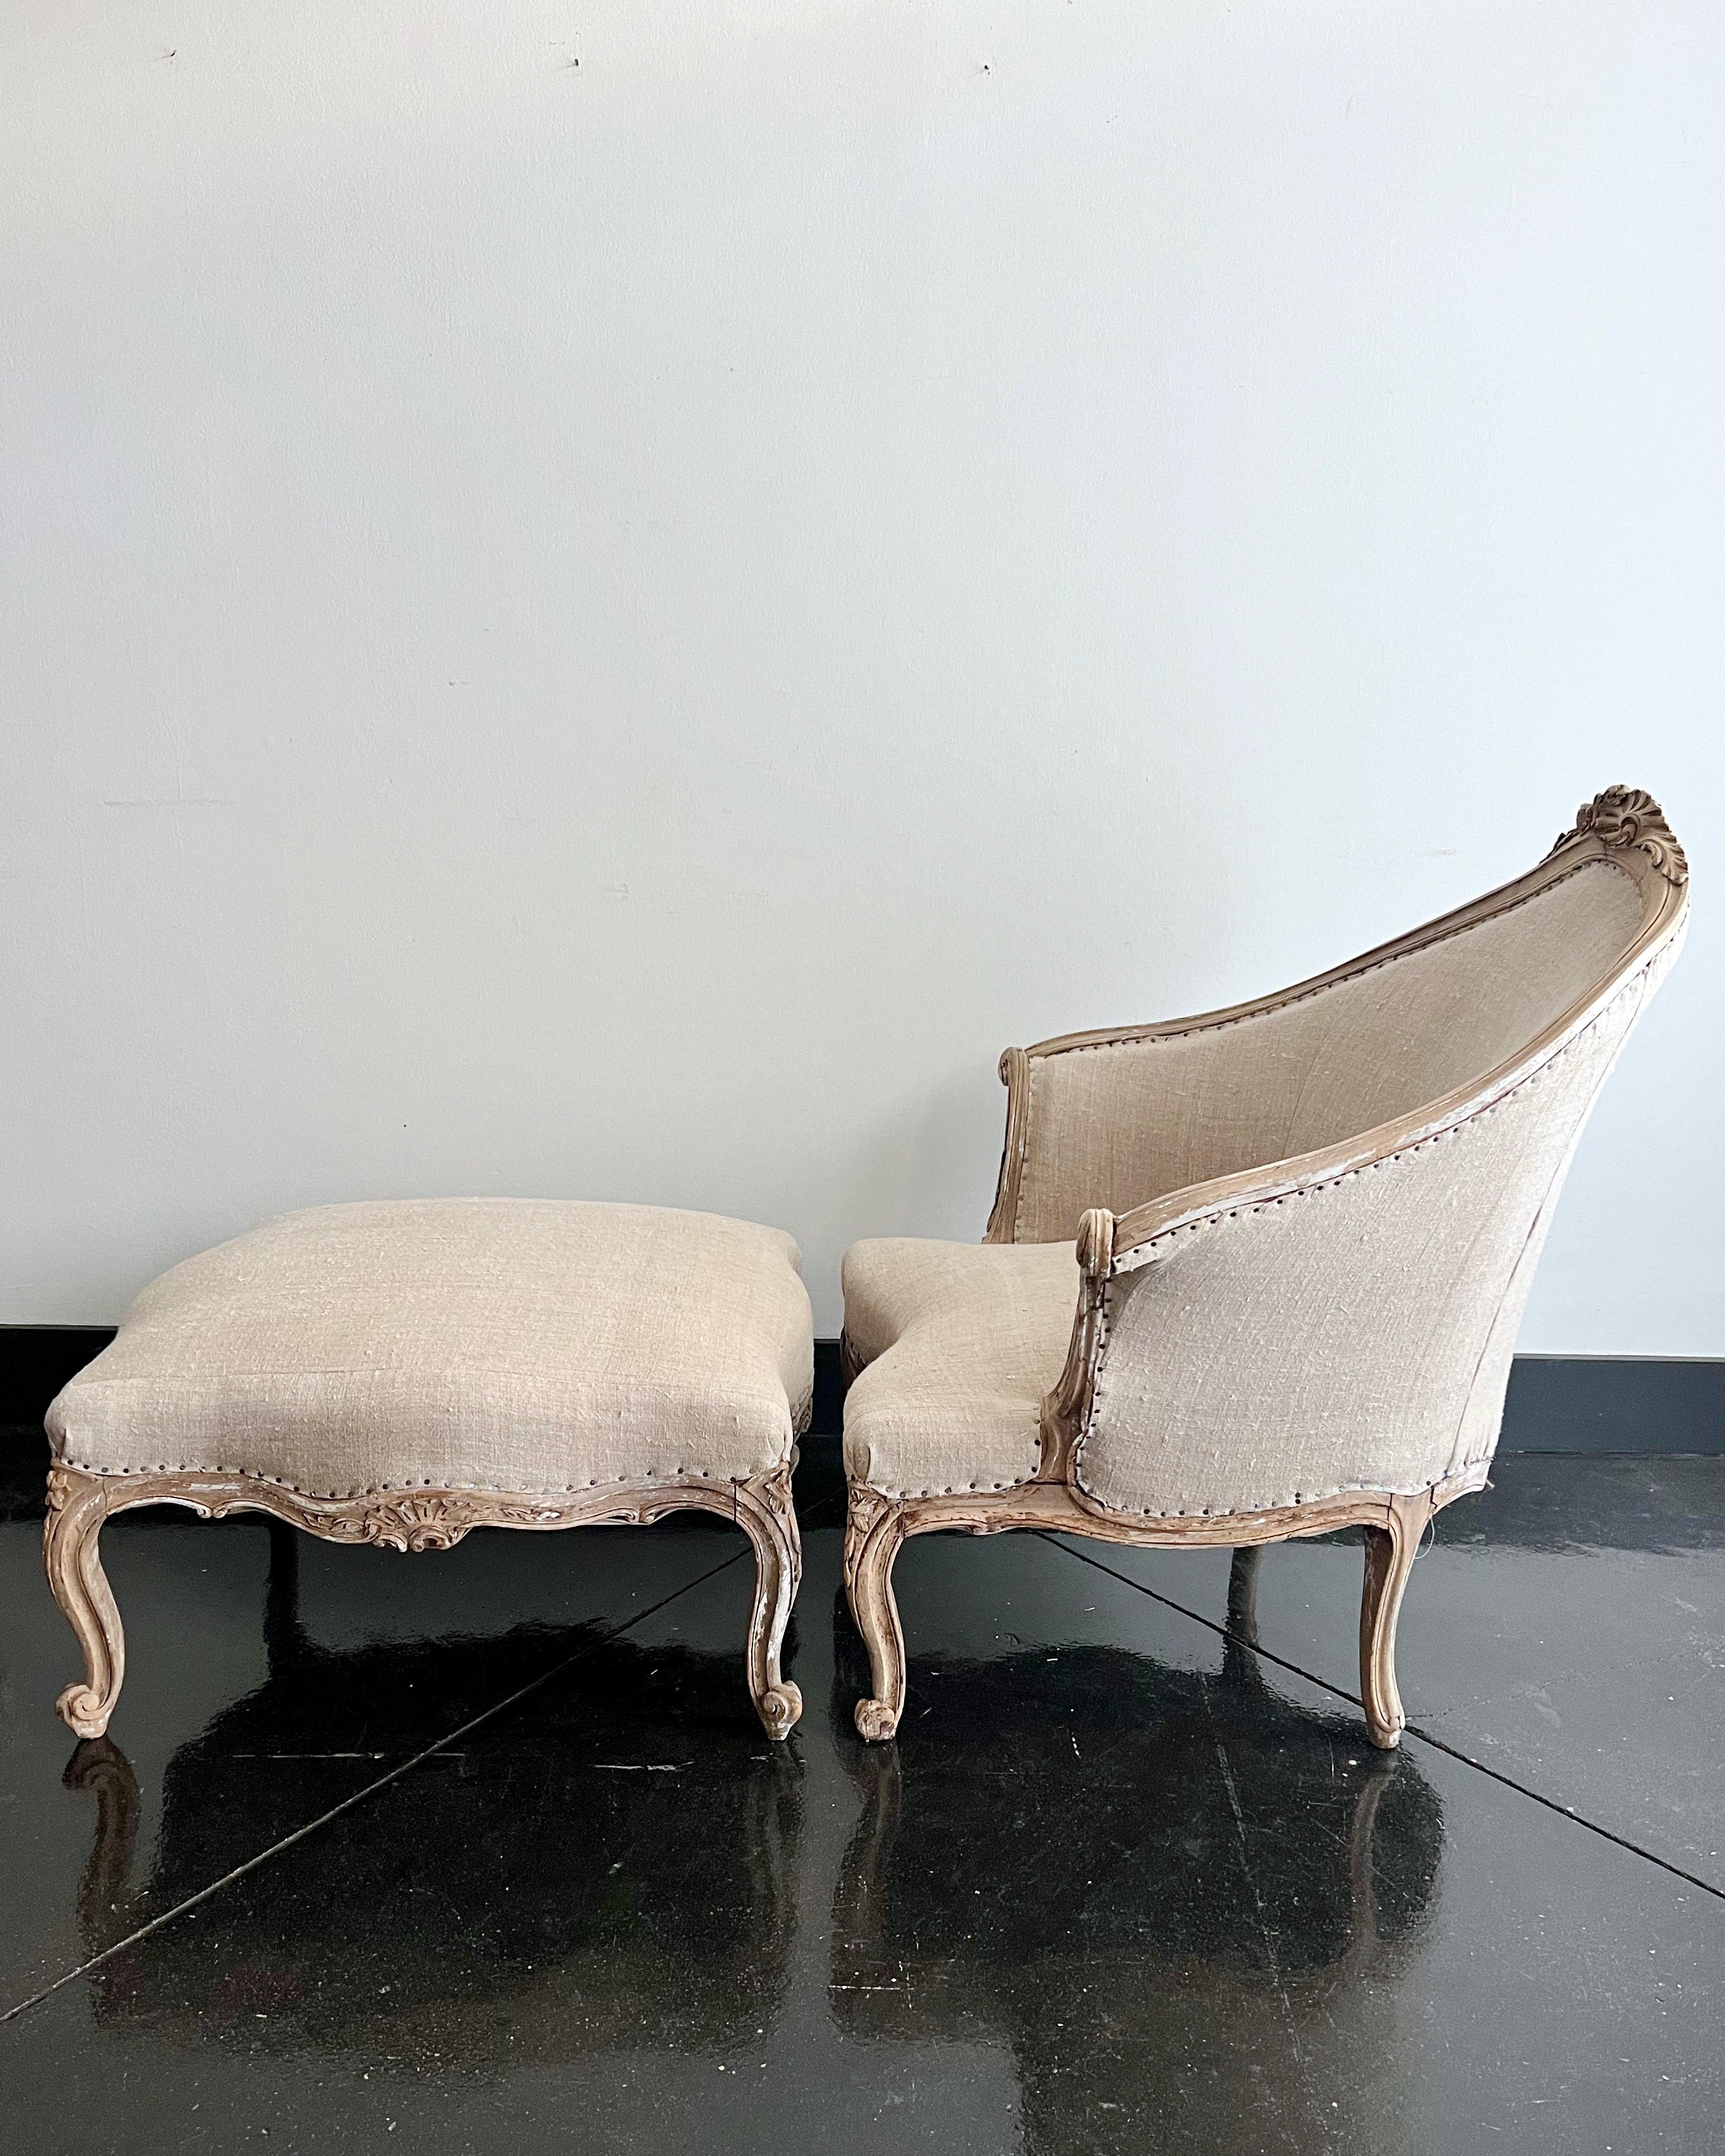 Französischer Duchesse-Brisée-Sessel des 19. Jahrhunderts mit dazugehörigem Fußhocker im Louis-XV-Stil, Sitzfläche mit leicht konkaver Rückenlehne, Rückenlehne aus Eichenholz mit zentraler geschnitzter Rosette. Sowohl der Stuhl als auch der Hocker